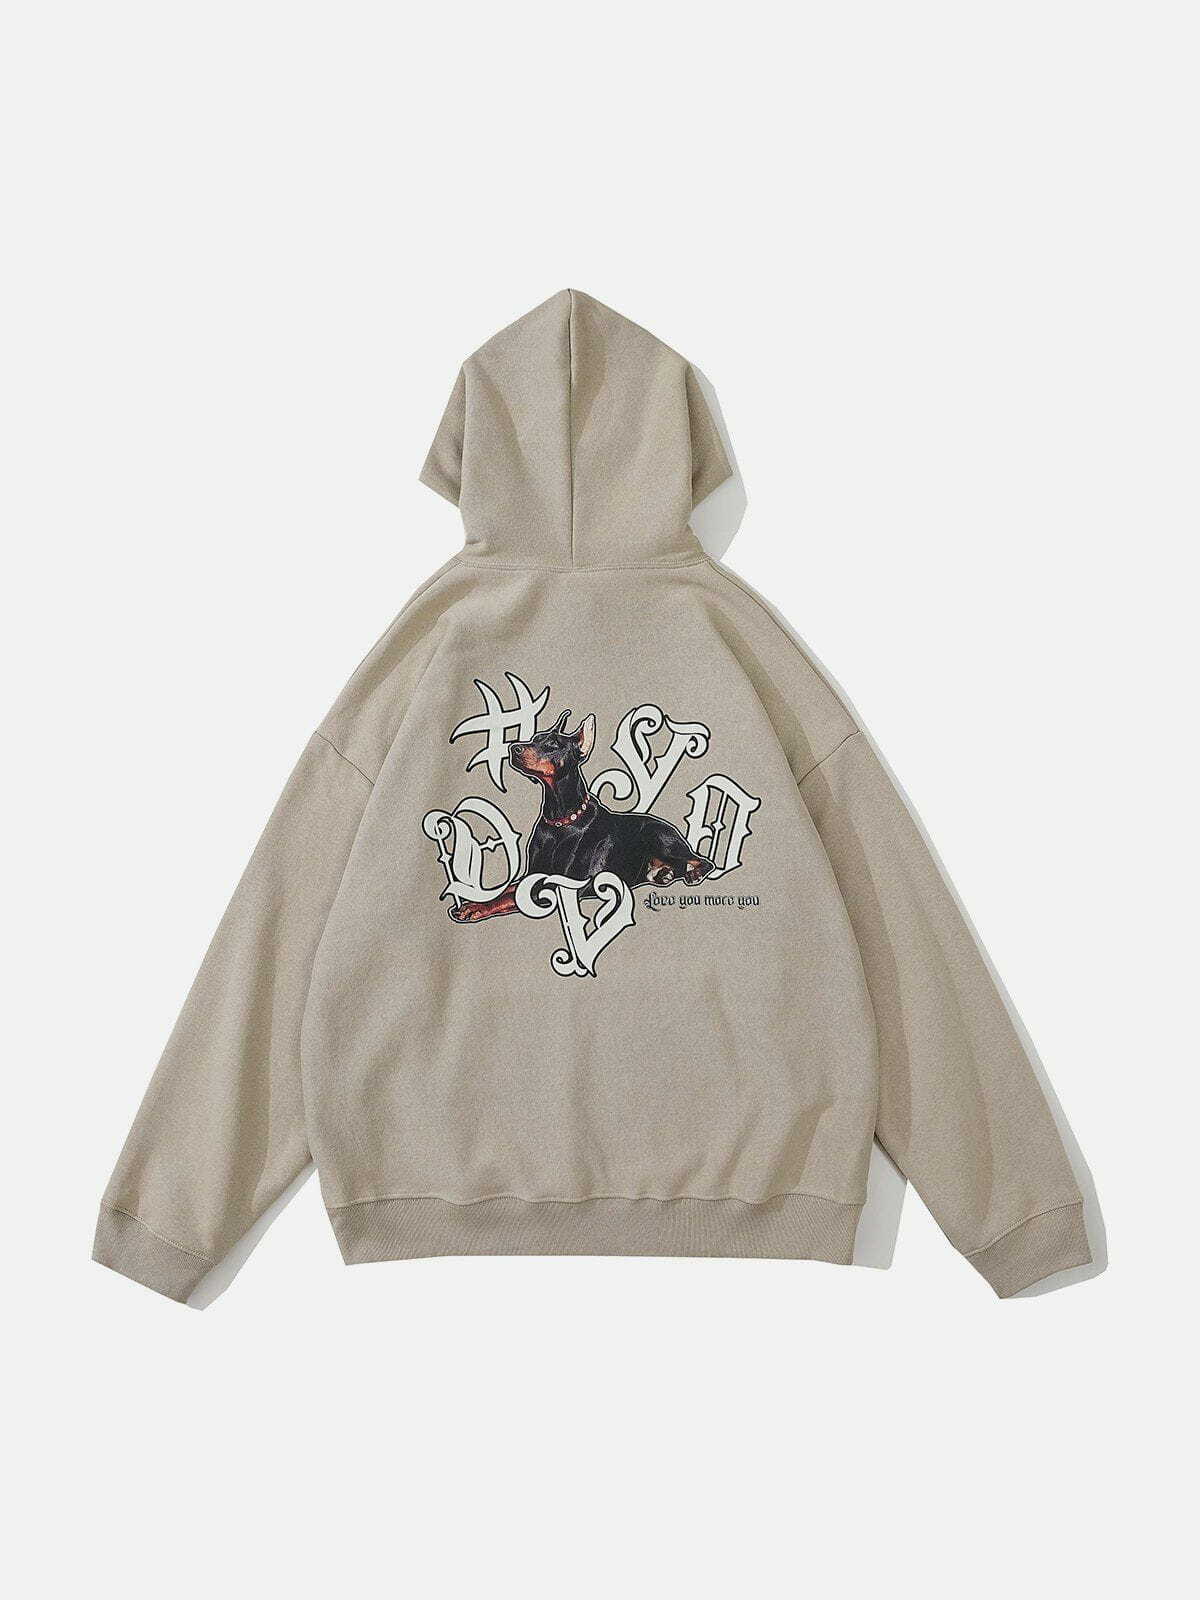 dynamic doberman print hoodie edgy streetwear 7282